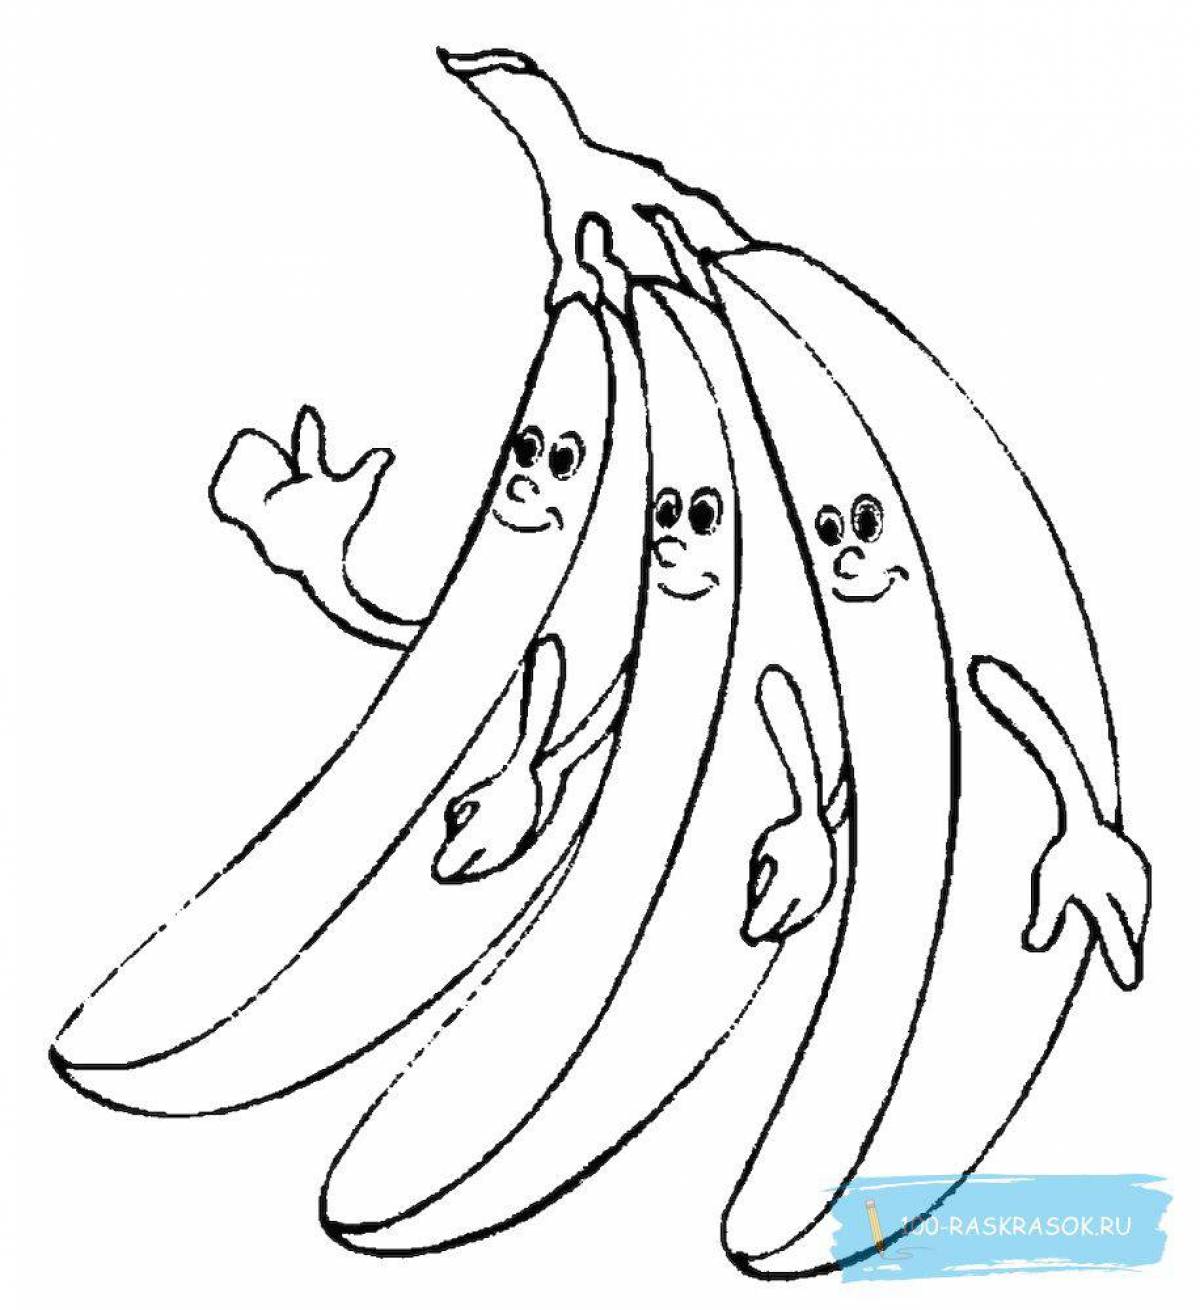 Яркая банановая раскраска для детей